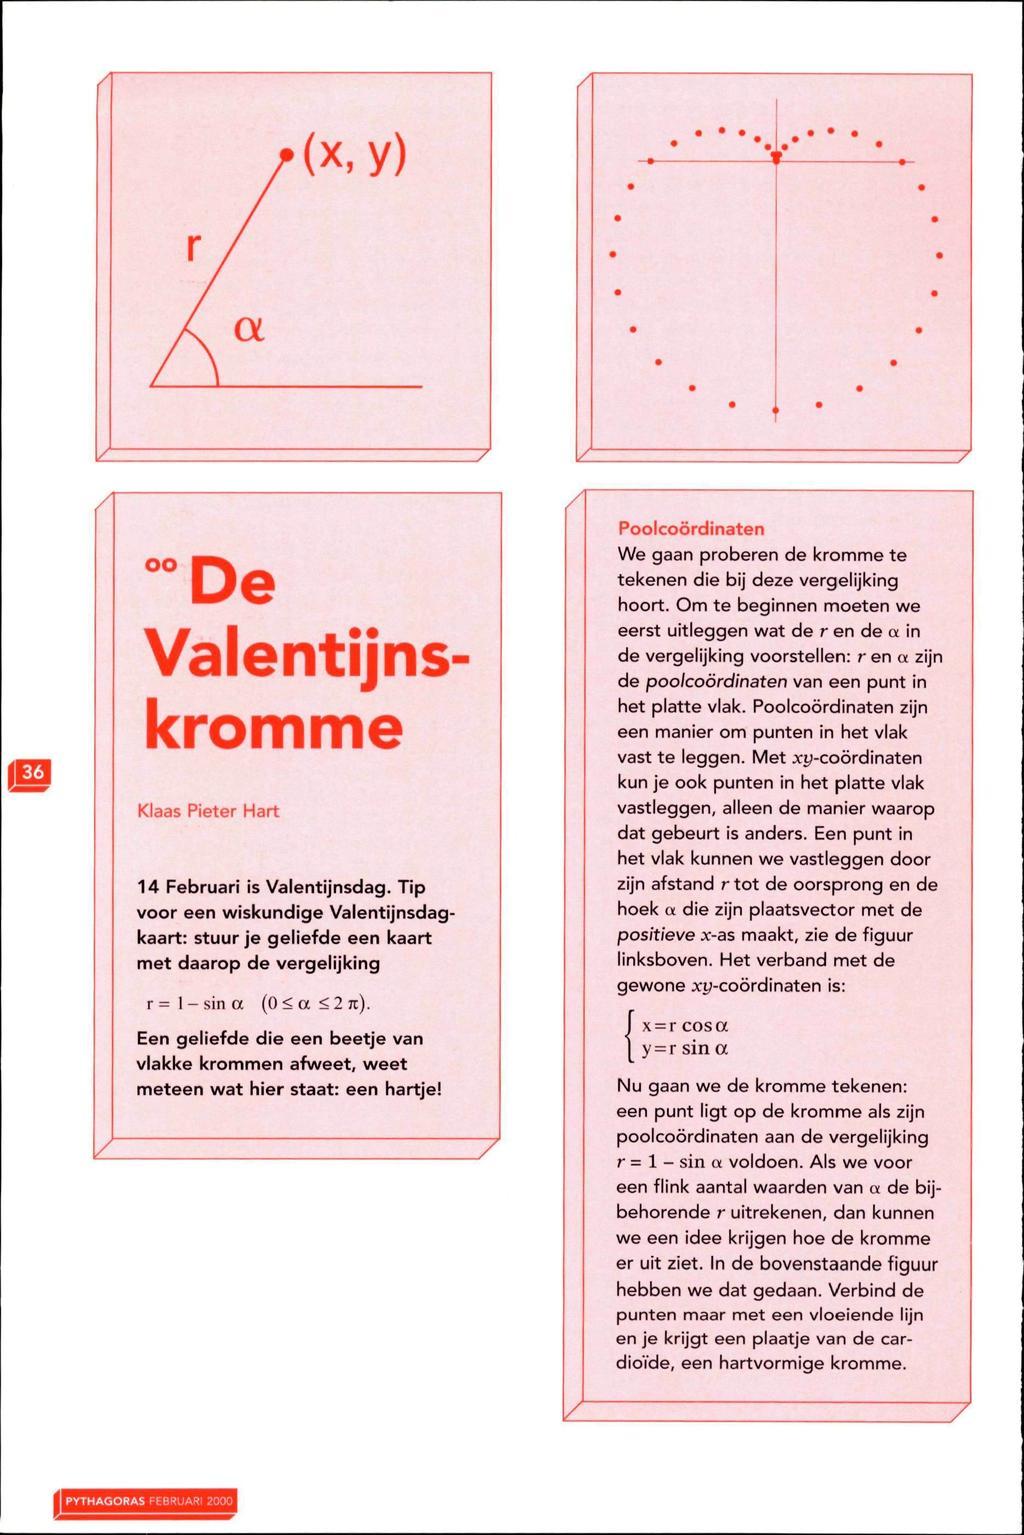 -< n ^ o Valentijnskromme Klaas Pieter Hart 14 Februari is Valentijnsdag. Tip voor een wiskundige Valentijnsdagkaart: stuur je geliefde een kaart met daarop de vergelijking r = l-sina (0<a <2 jc).